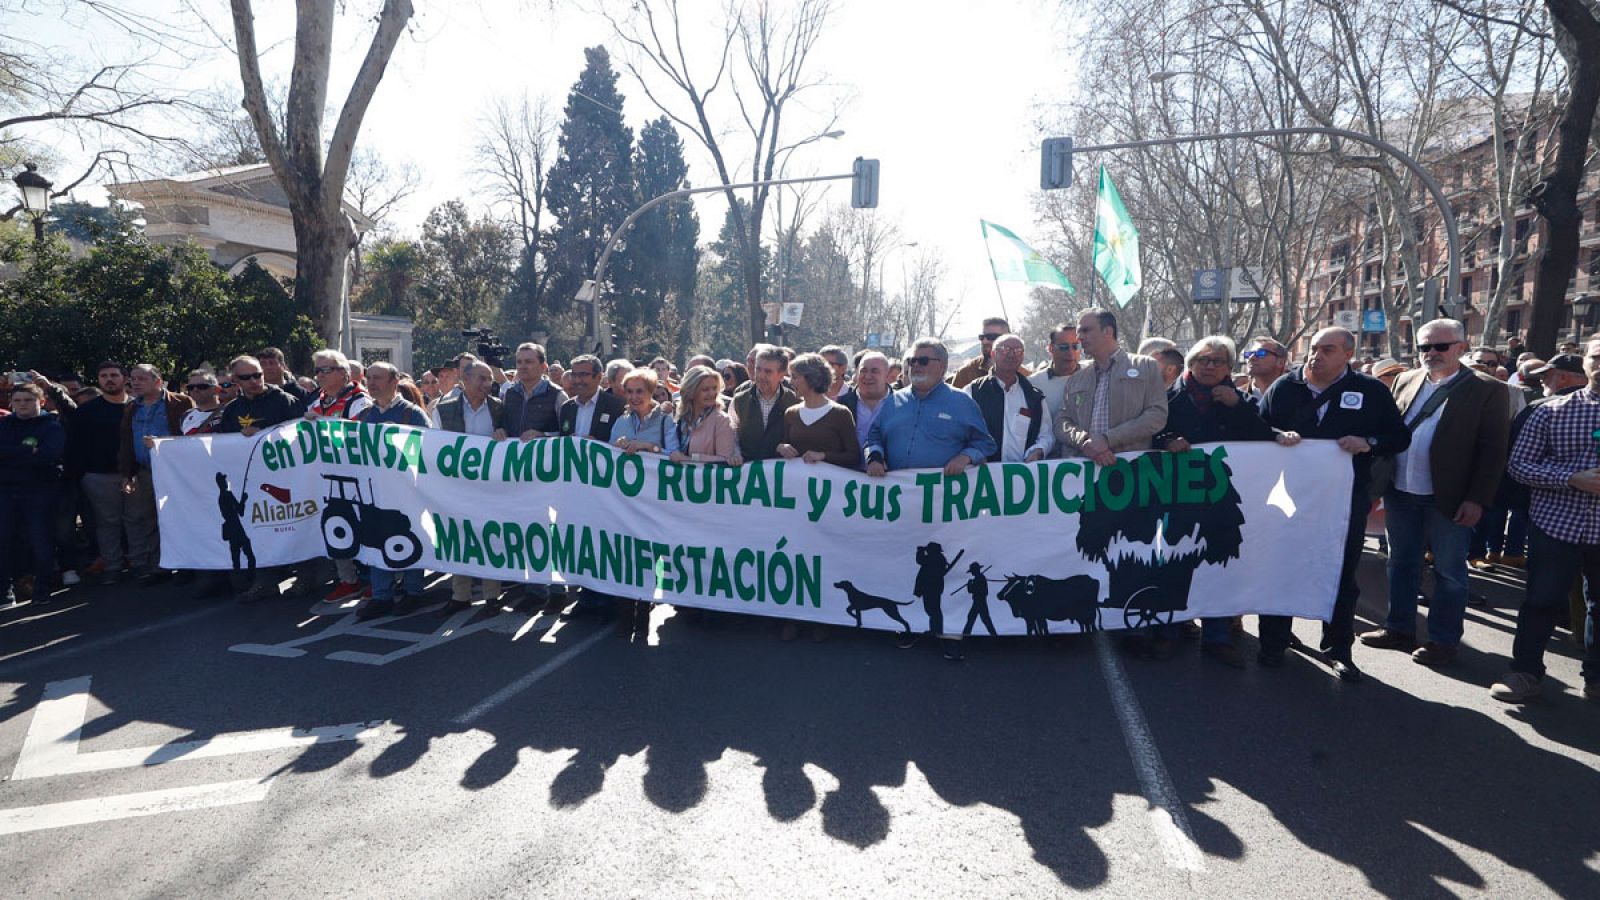 Mundo rural: El mundo rural se manifiesta en Madrid para pedir más representación institucional y defender las tradiciones 